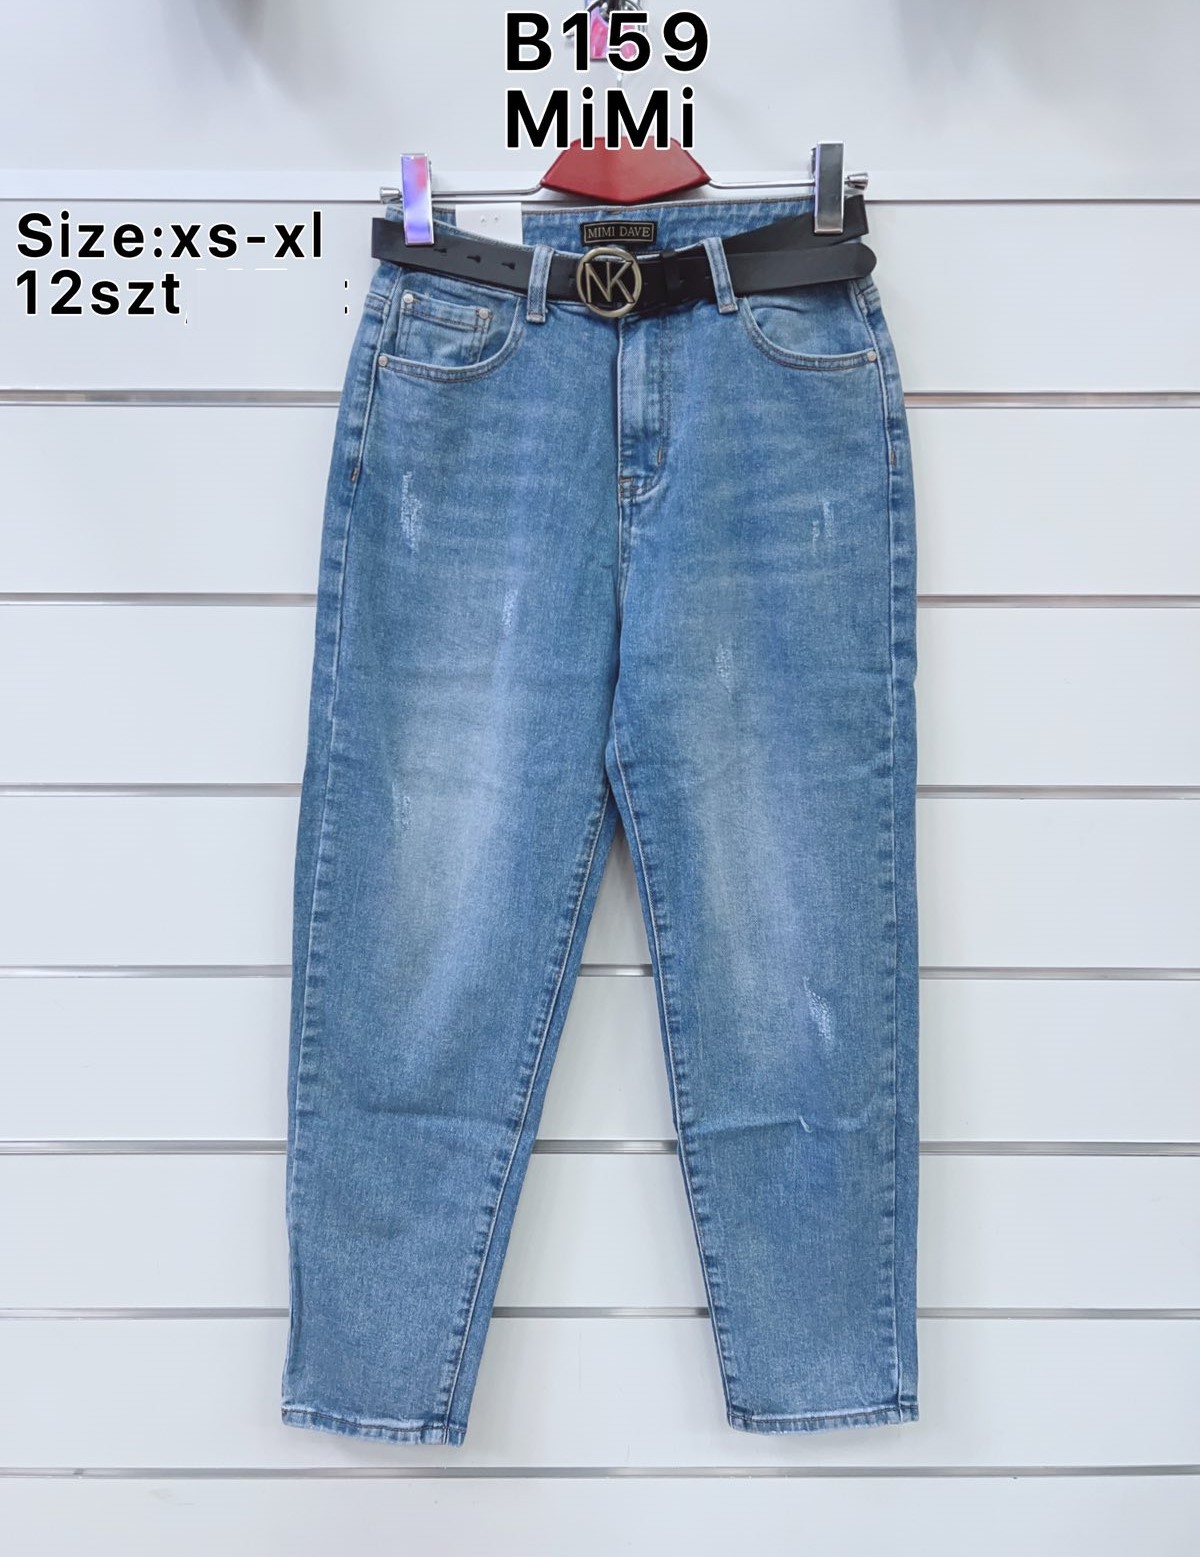 Spodnie  damskie jeans Roz  XS-XL   1 kolor . Paczka 12sz.t